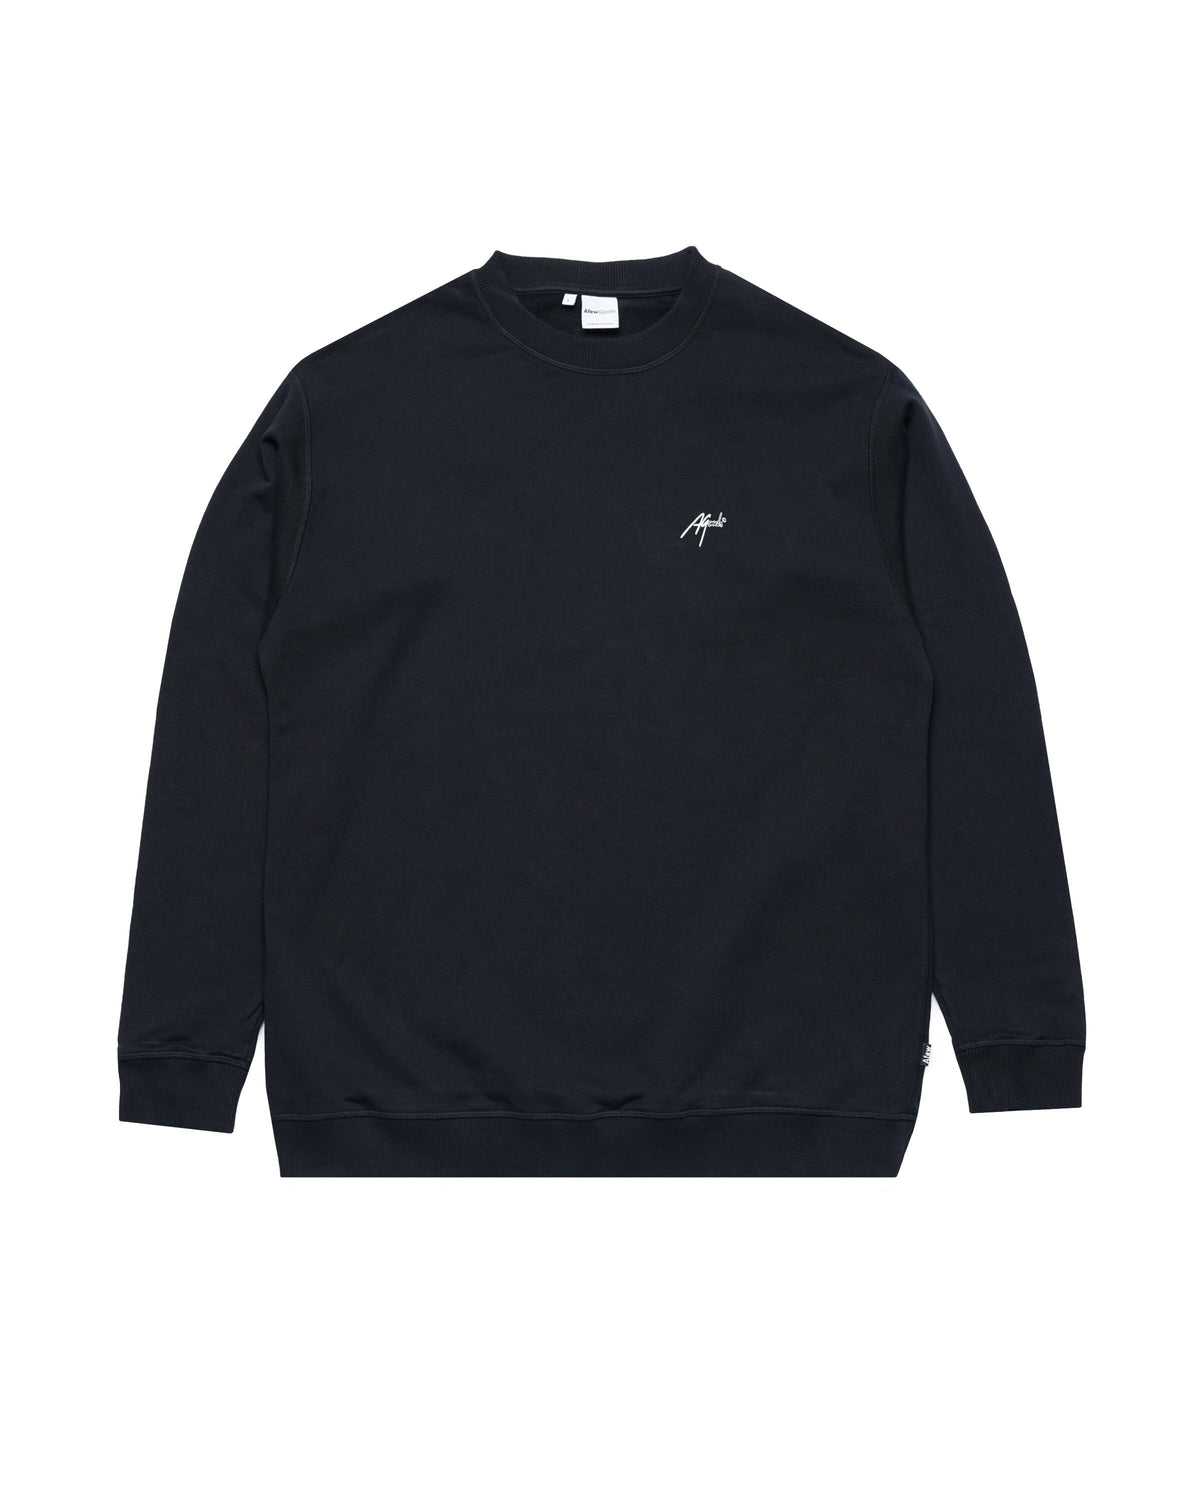 Afew Goods Logo Sweater (Black)